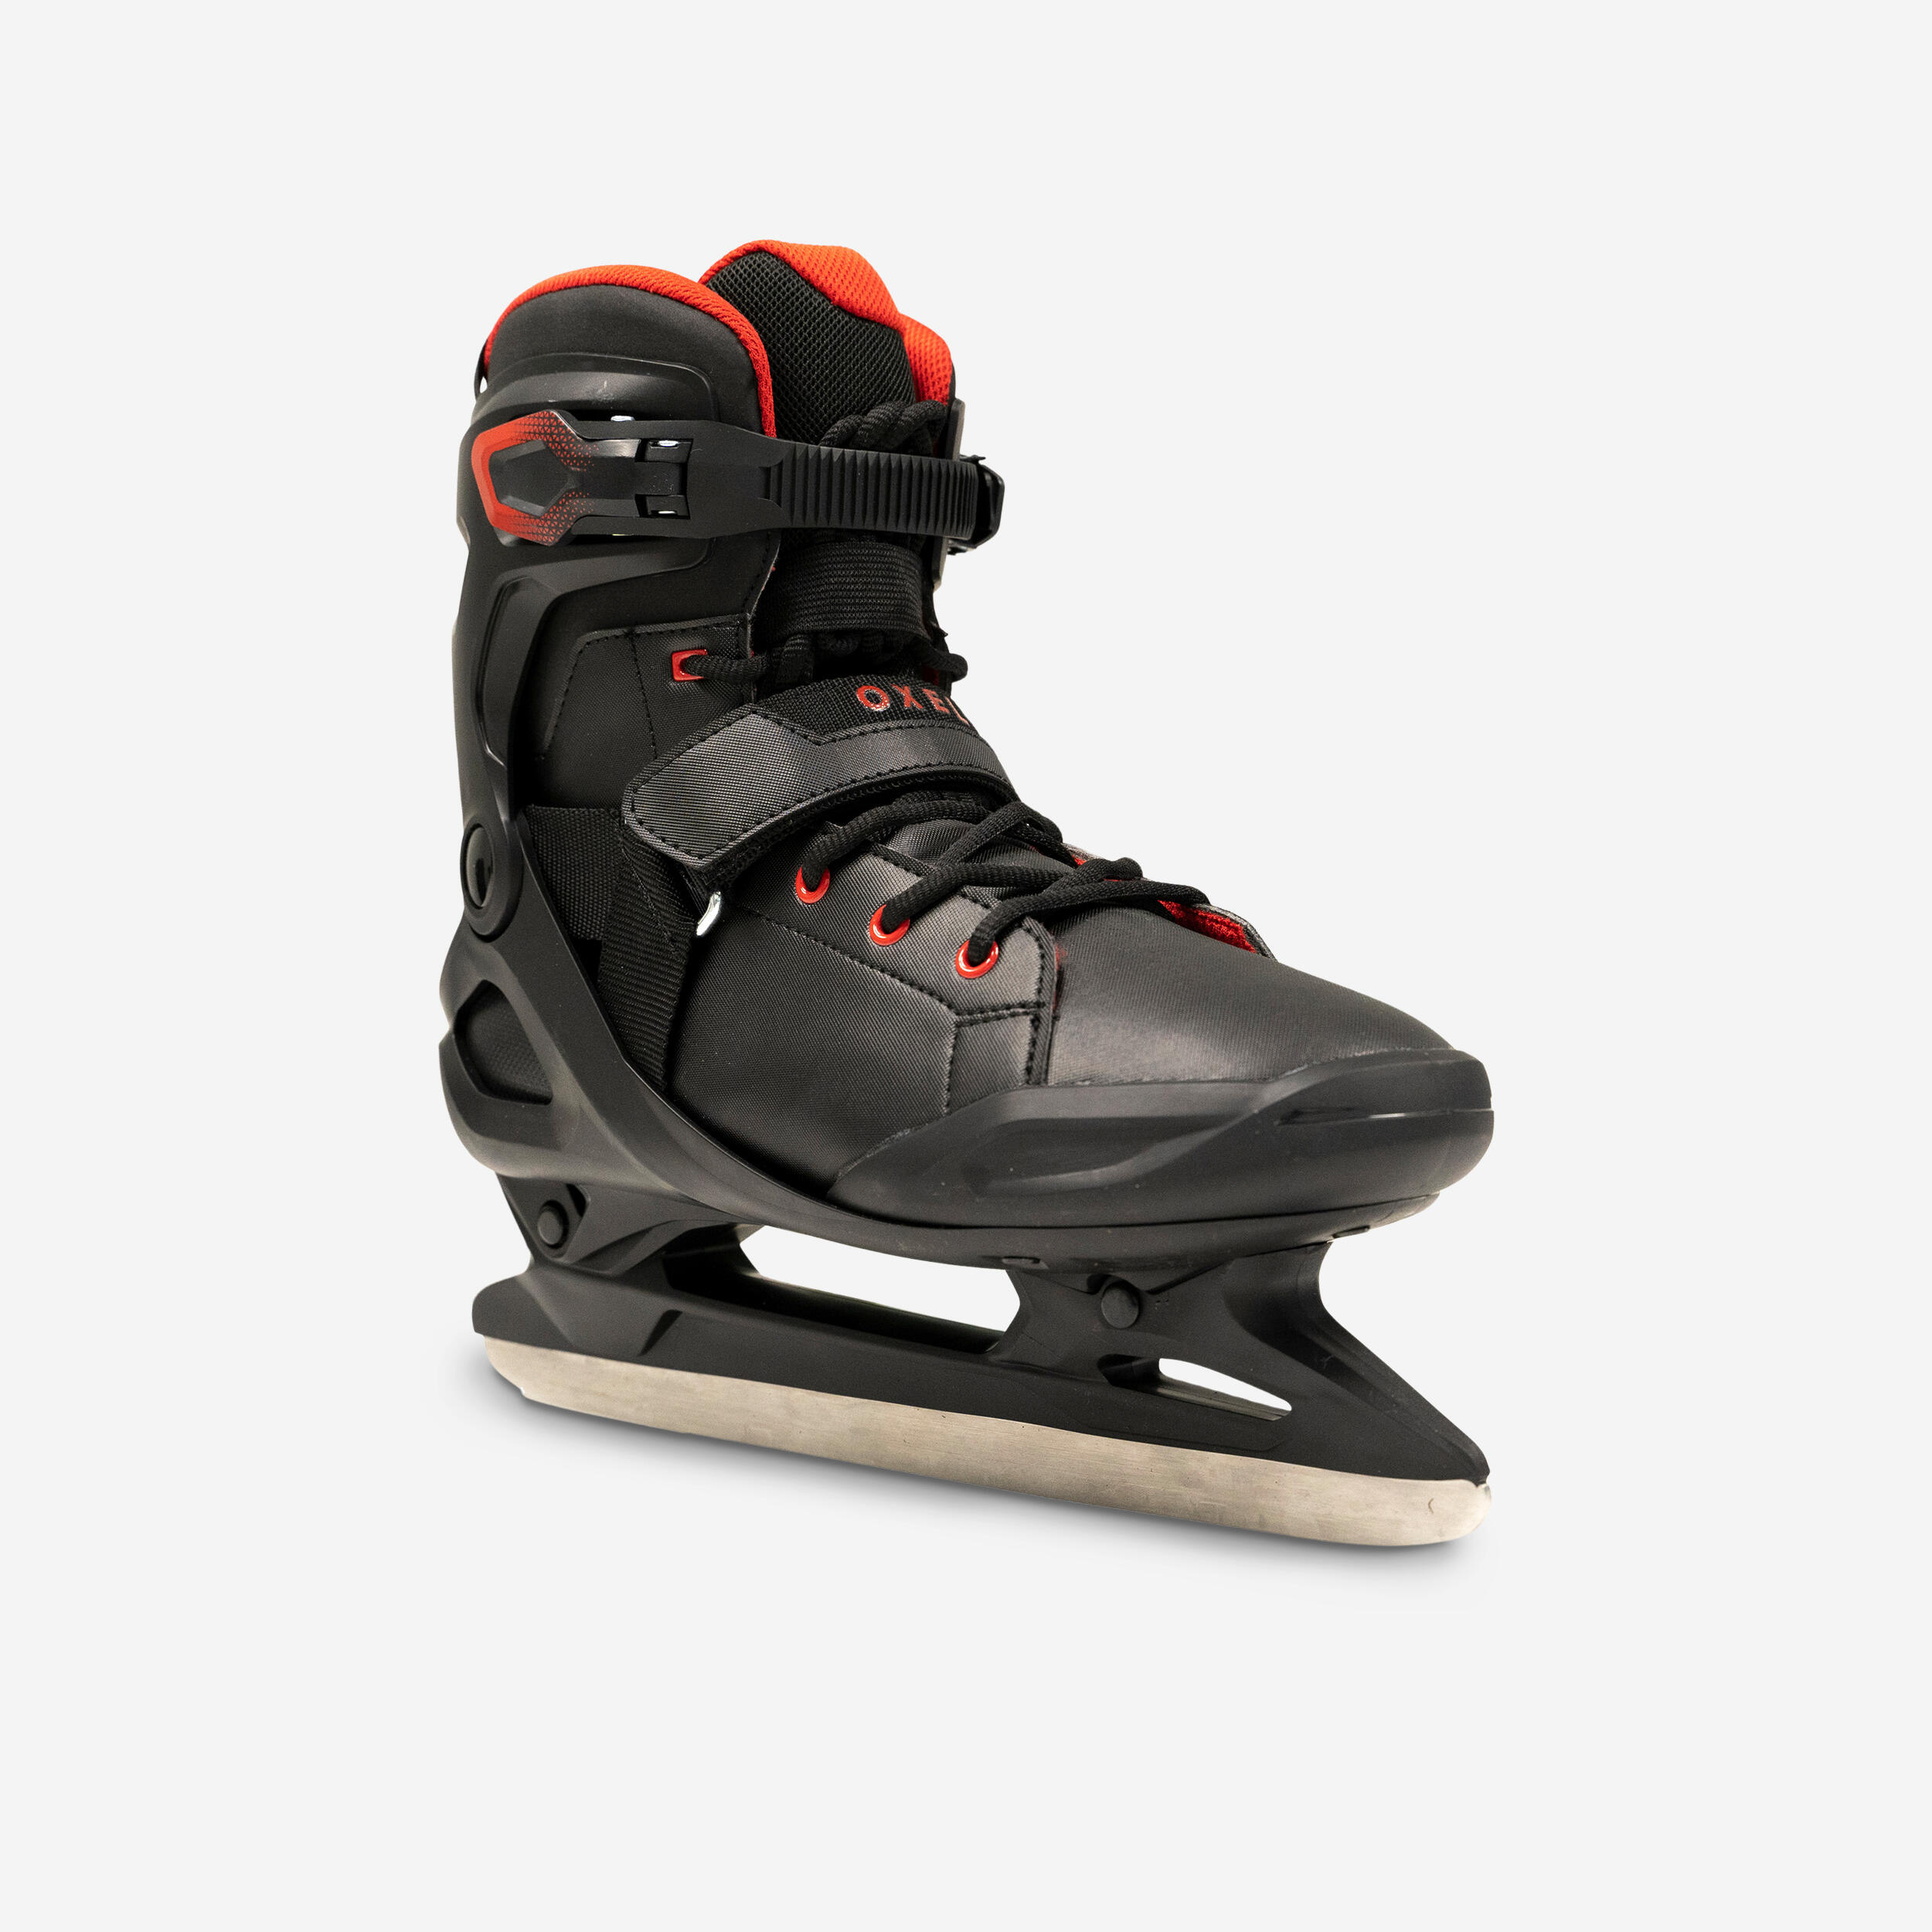 Men's Ice Skates Fit 500 - Black/Red OXELO